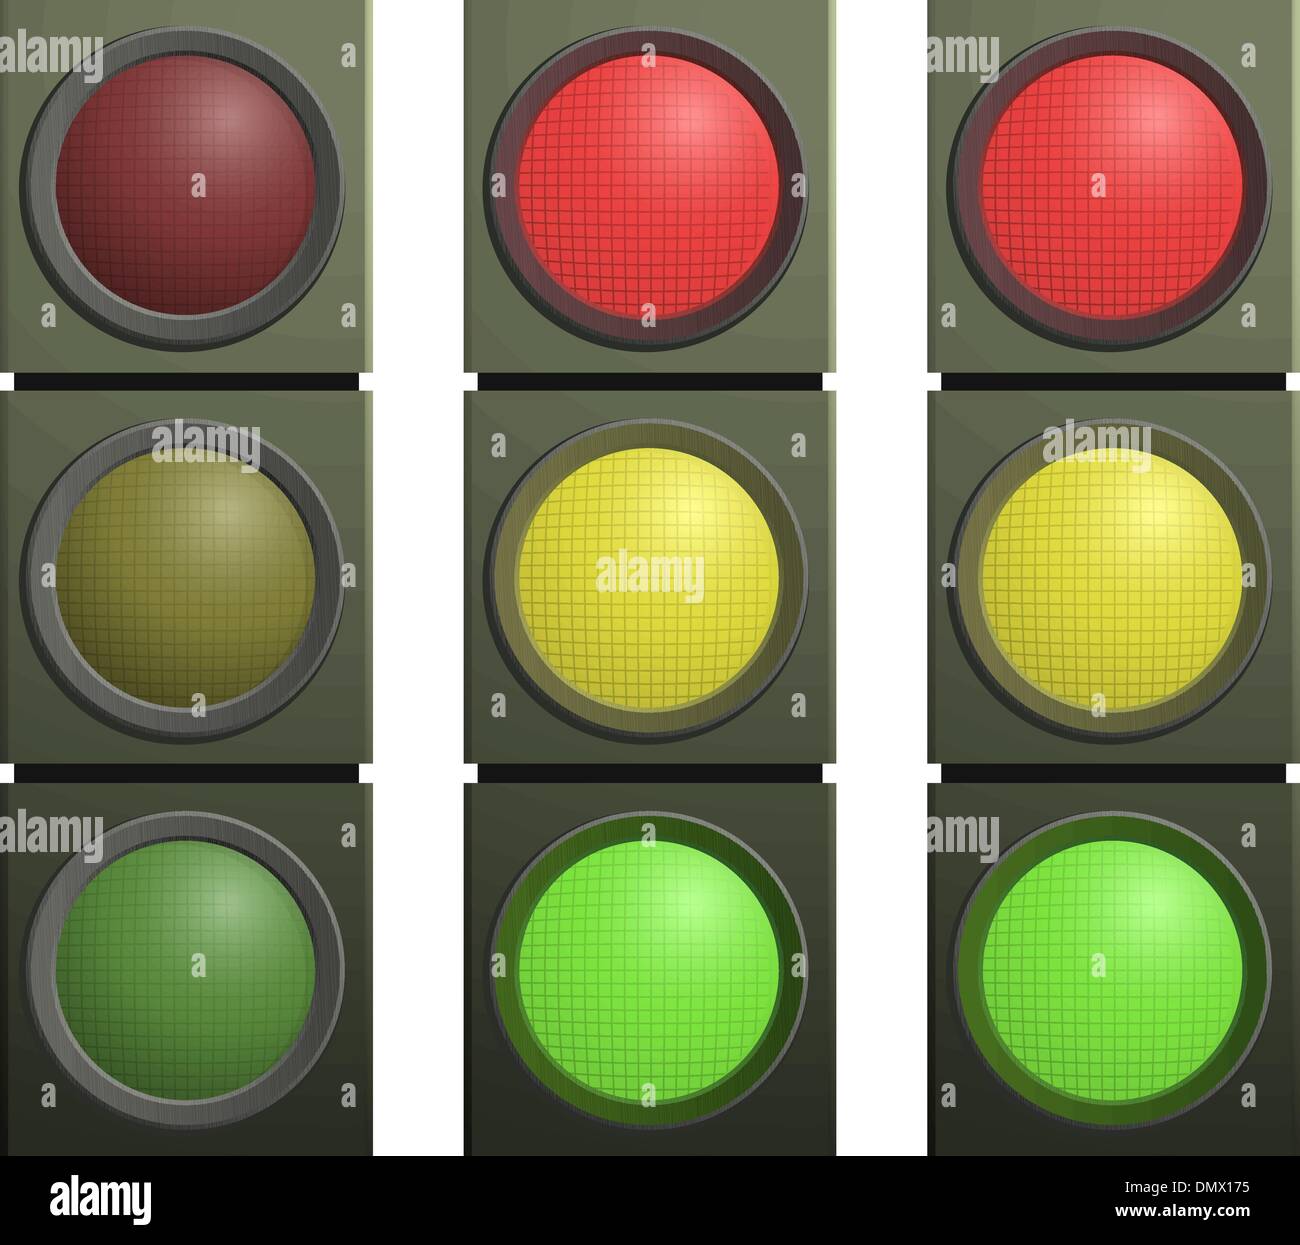 Vector set of traffic lights Stock Vector